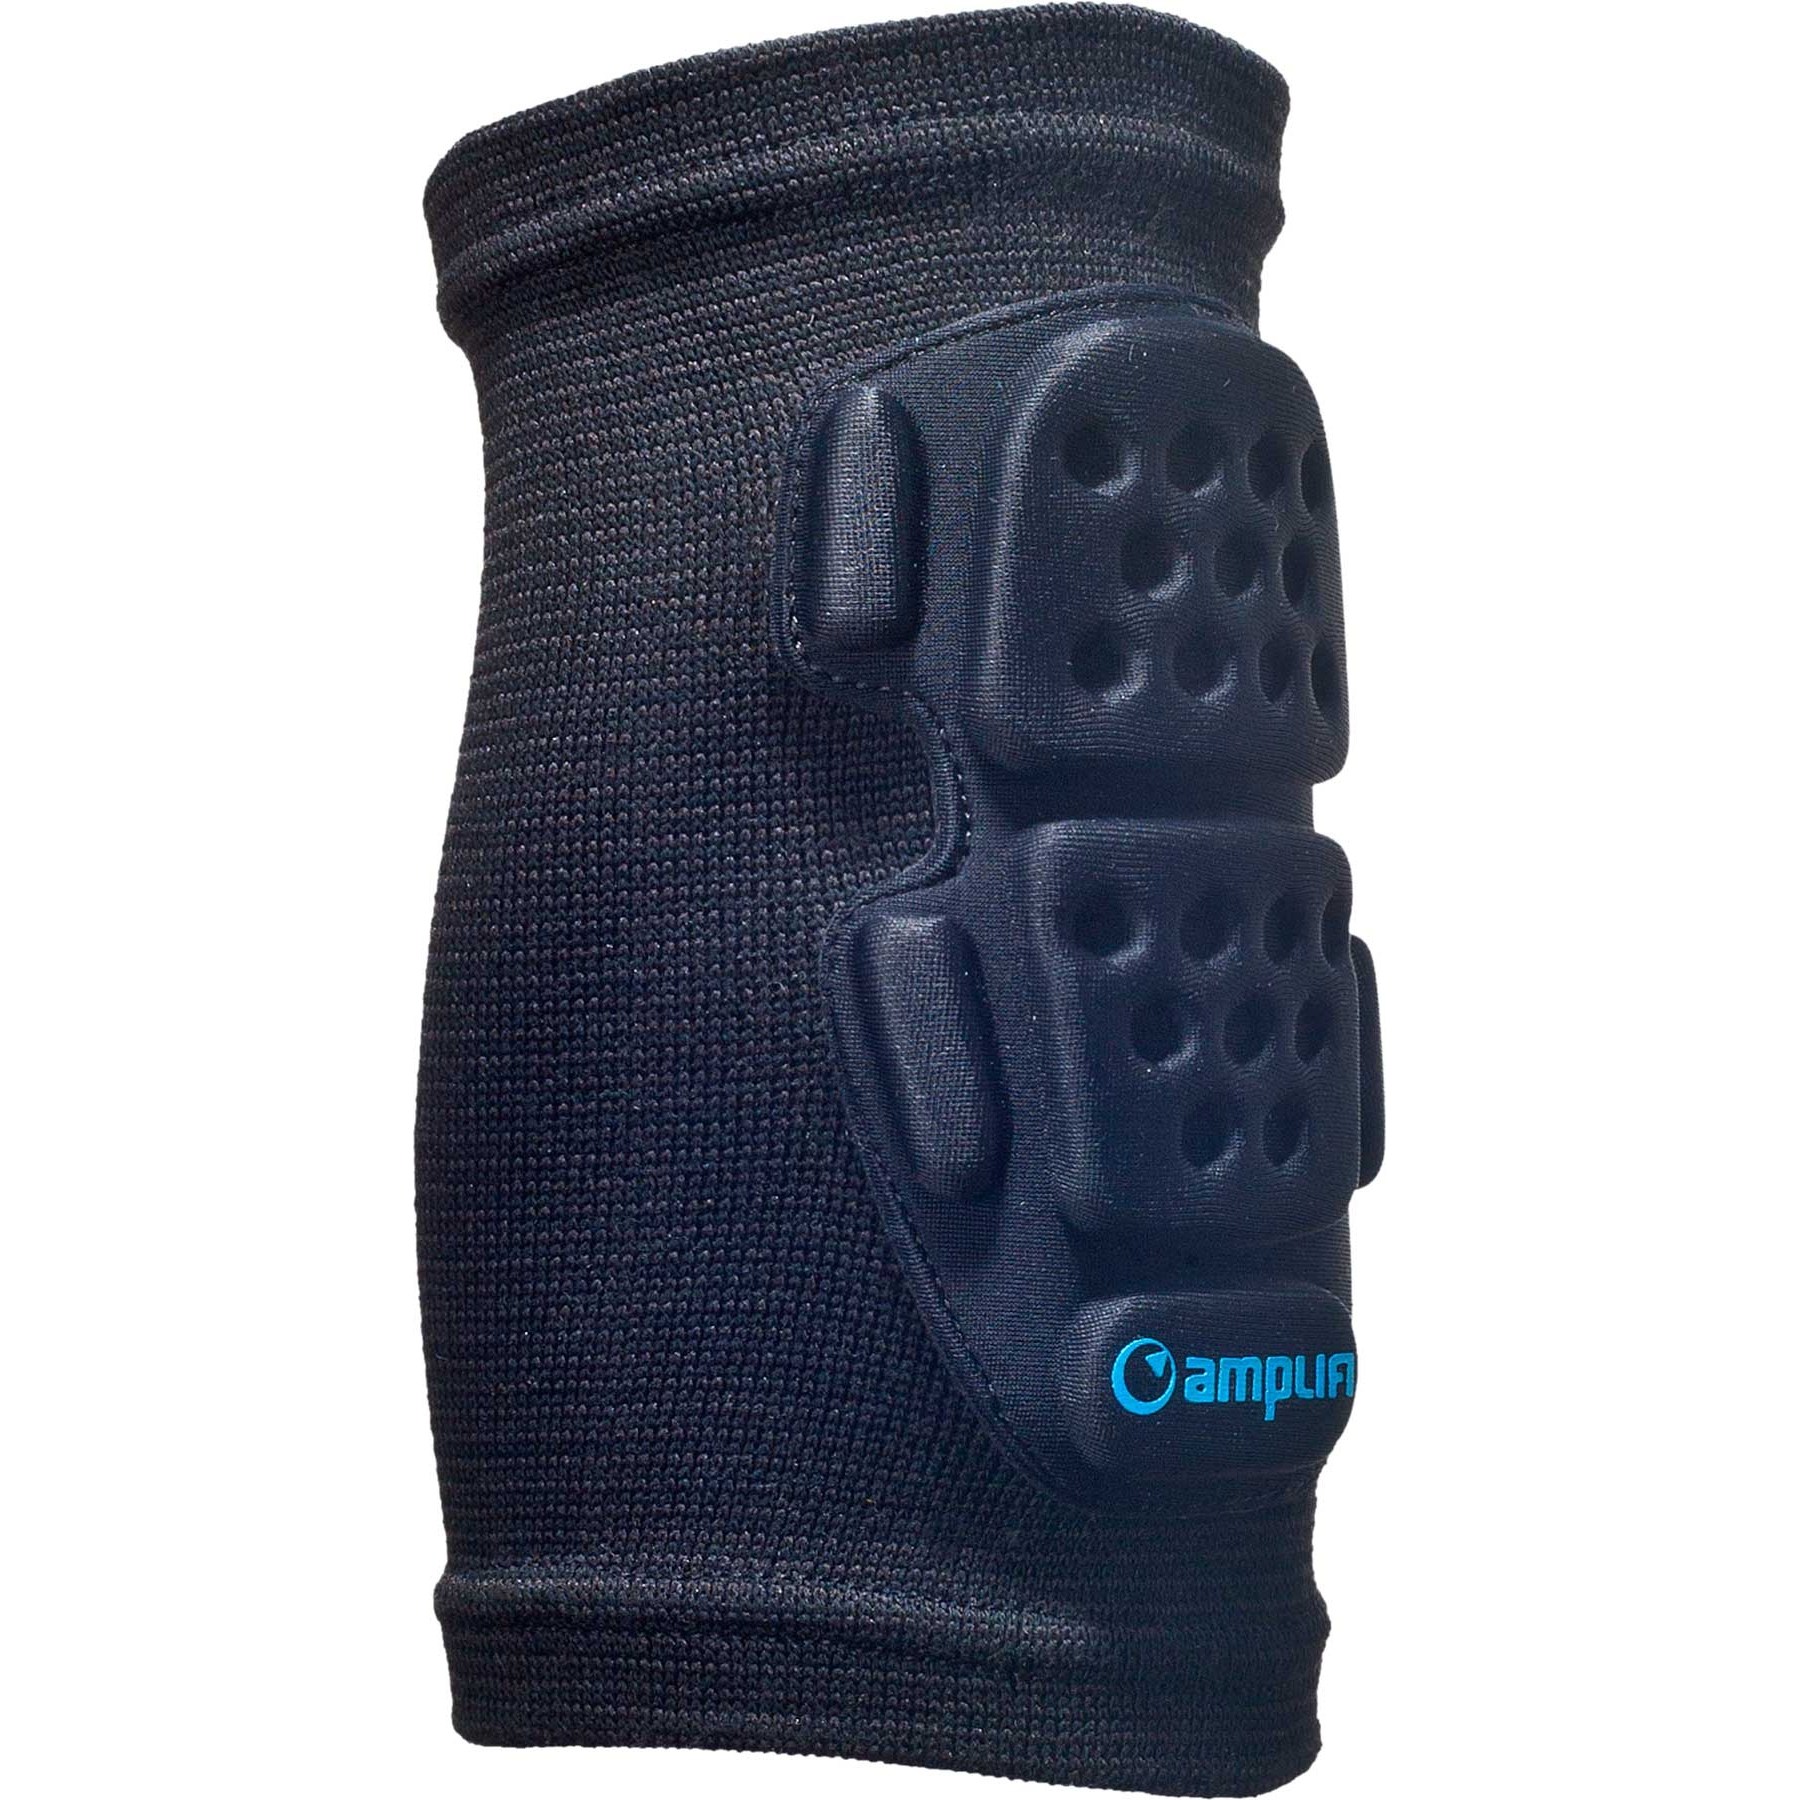 Produktbild von Amplifi Elbow Sleeve Grom - Ellbogen-Protektor für Kinder - black